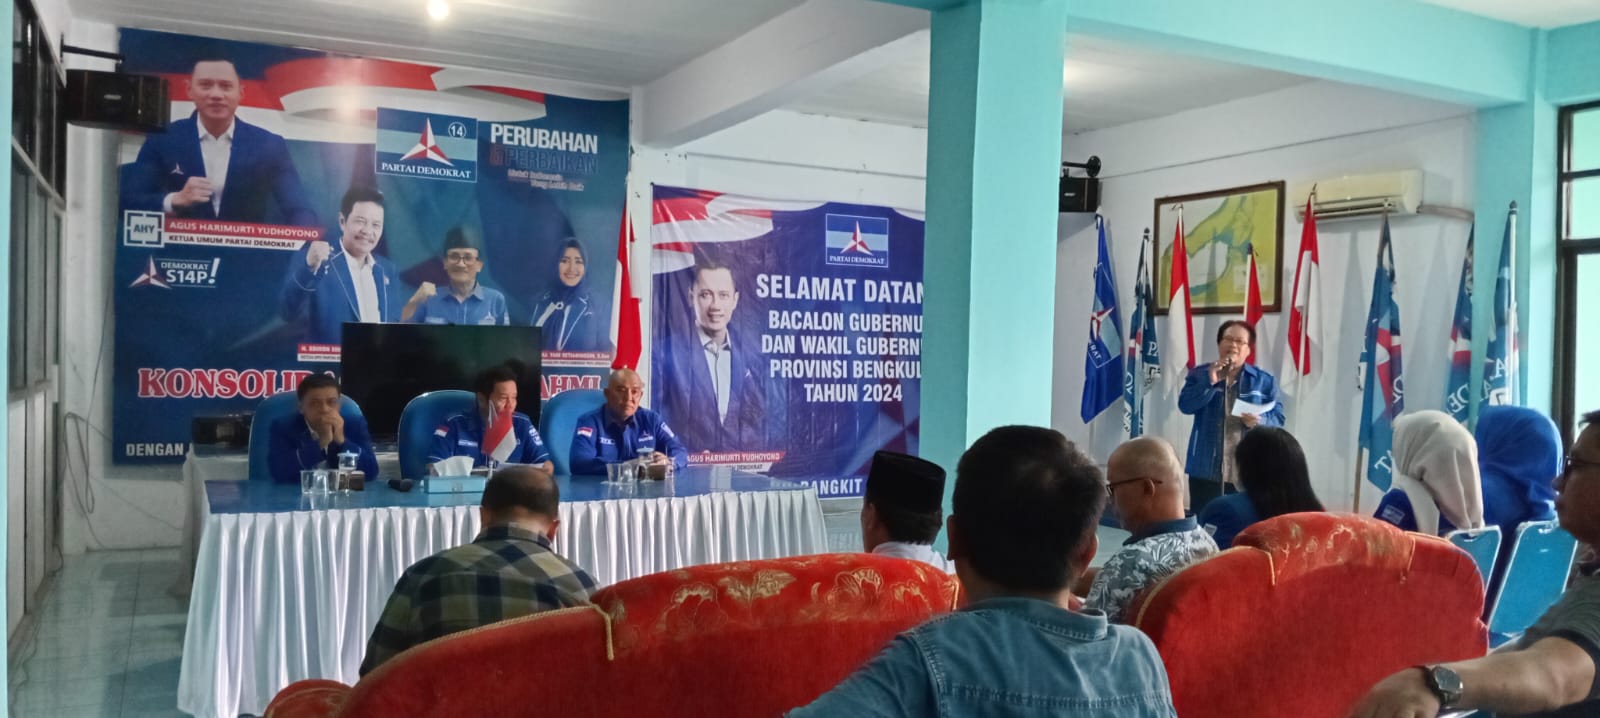 DPW Partai Demokrat Bengkulu Masih Membuka Pendaftaran Calon Gubernur dan Wakil Gubernur